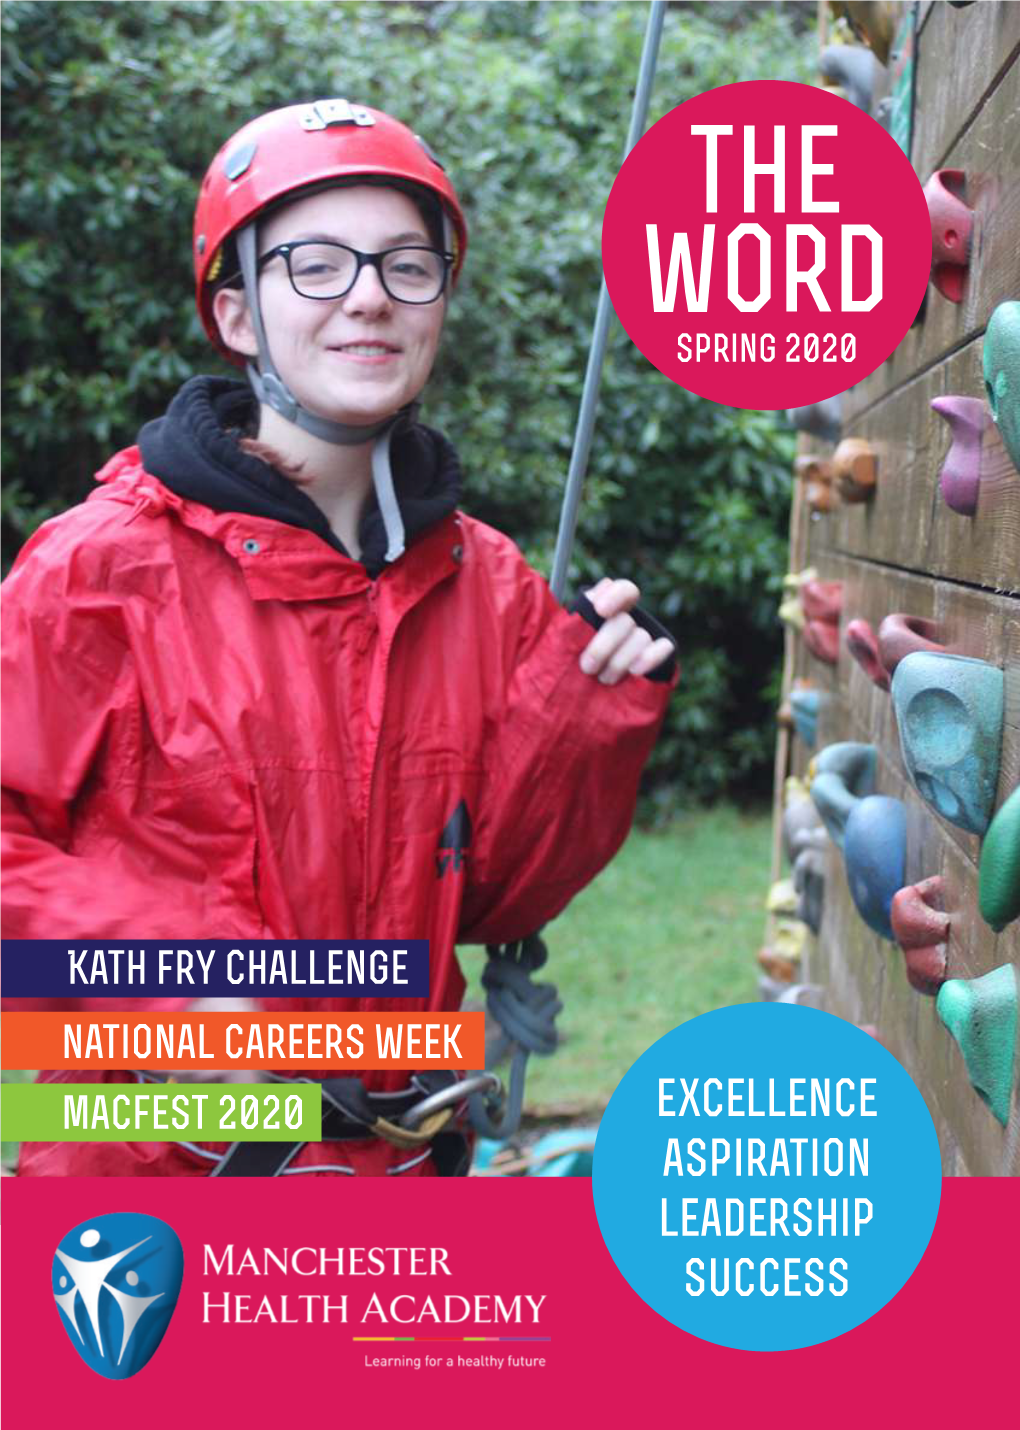 Kath Fry Challenge Macfest 2020 National Careers Week